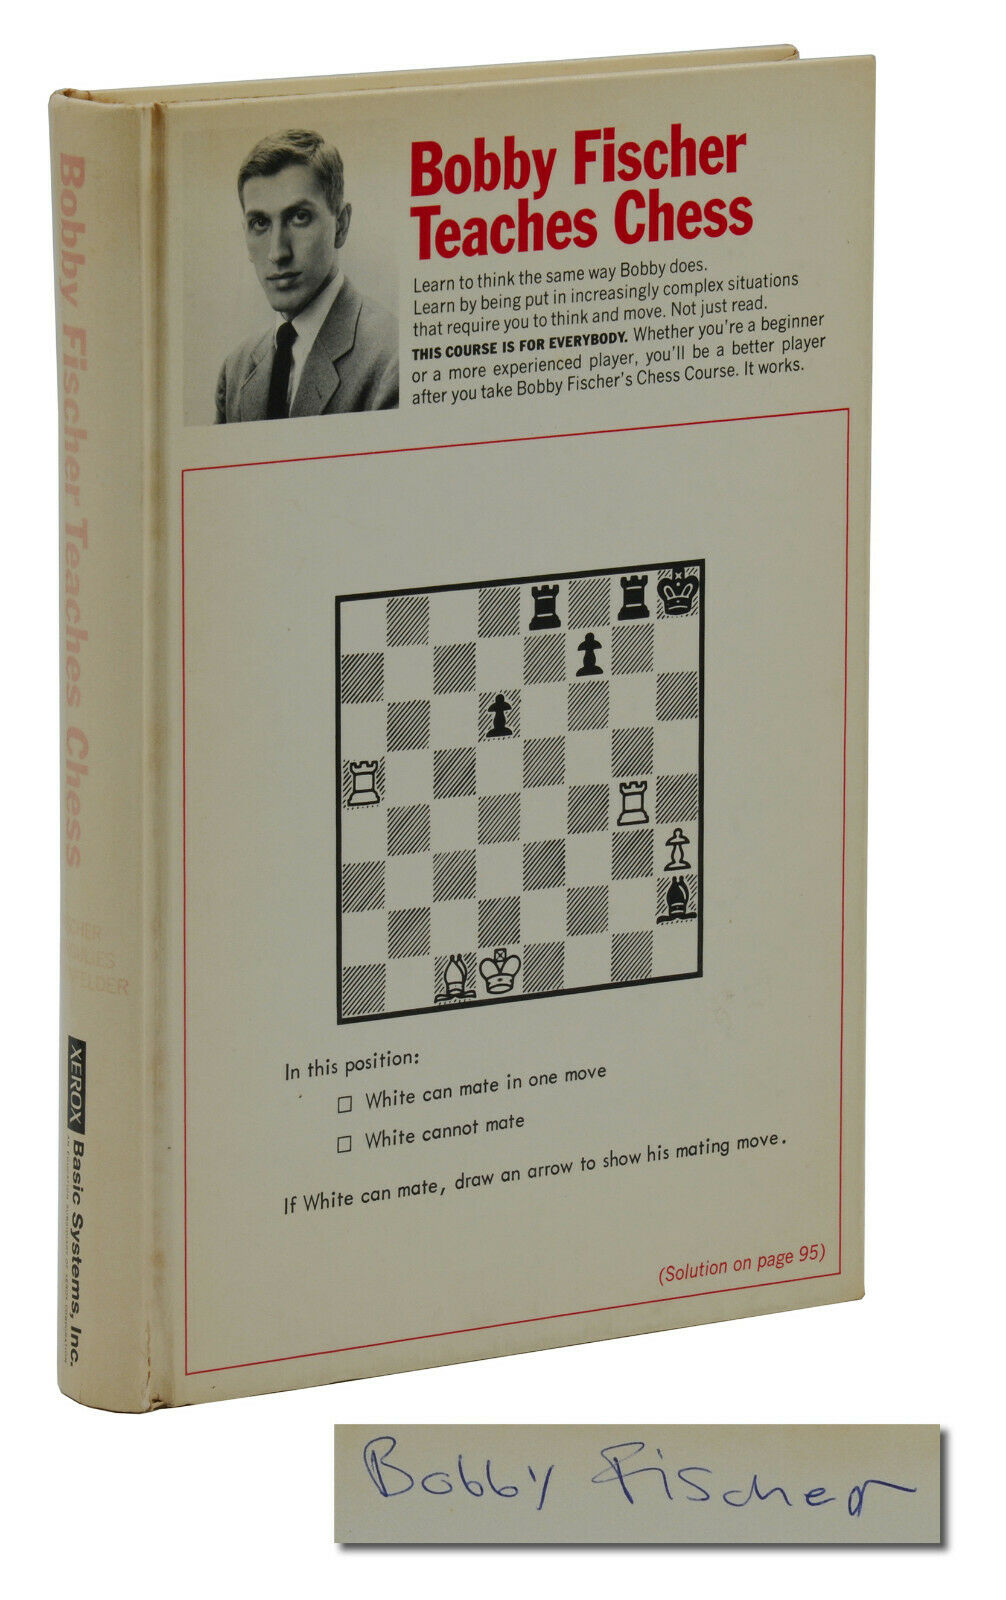 fischer bobby - teaches chess - AbeBooks